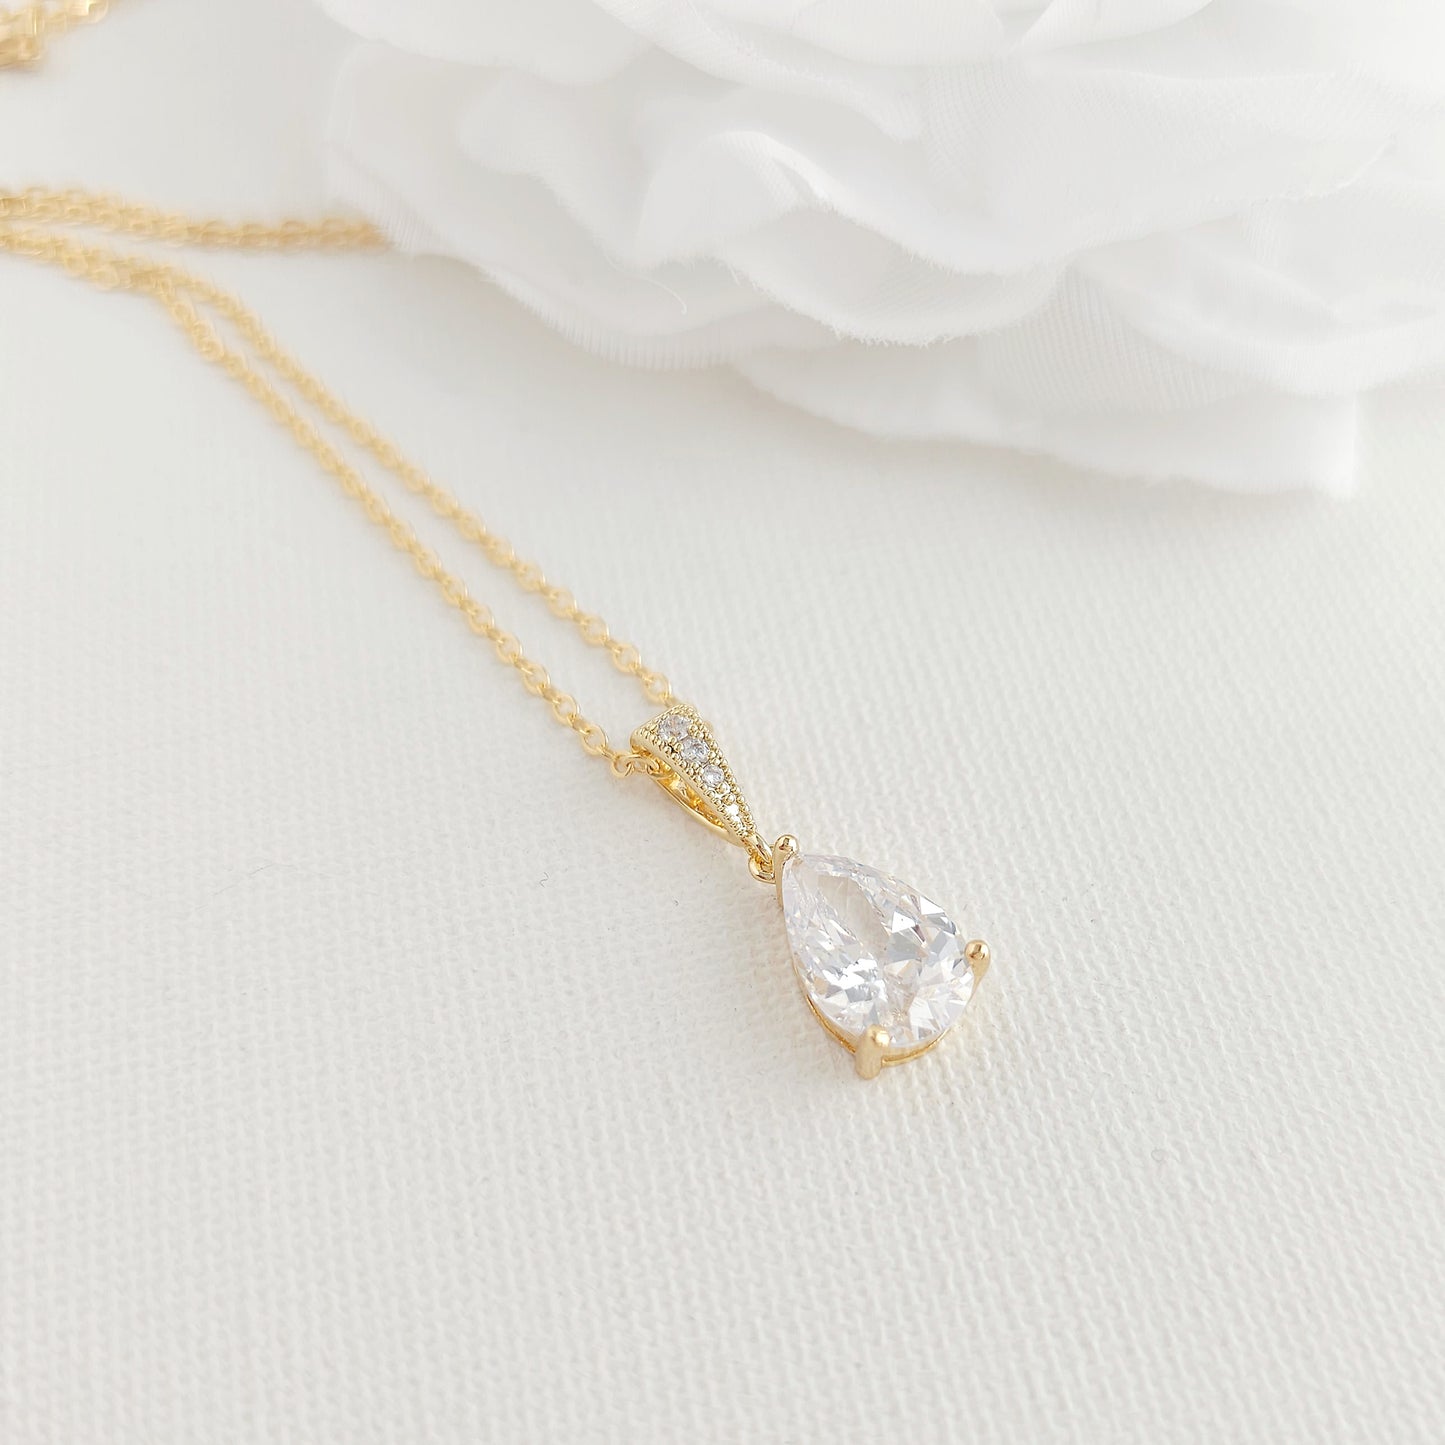 Teardrop Necklace in Gold for Brides & Bridesmaids- Nicole